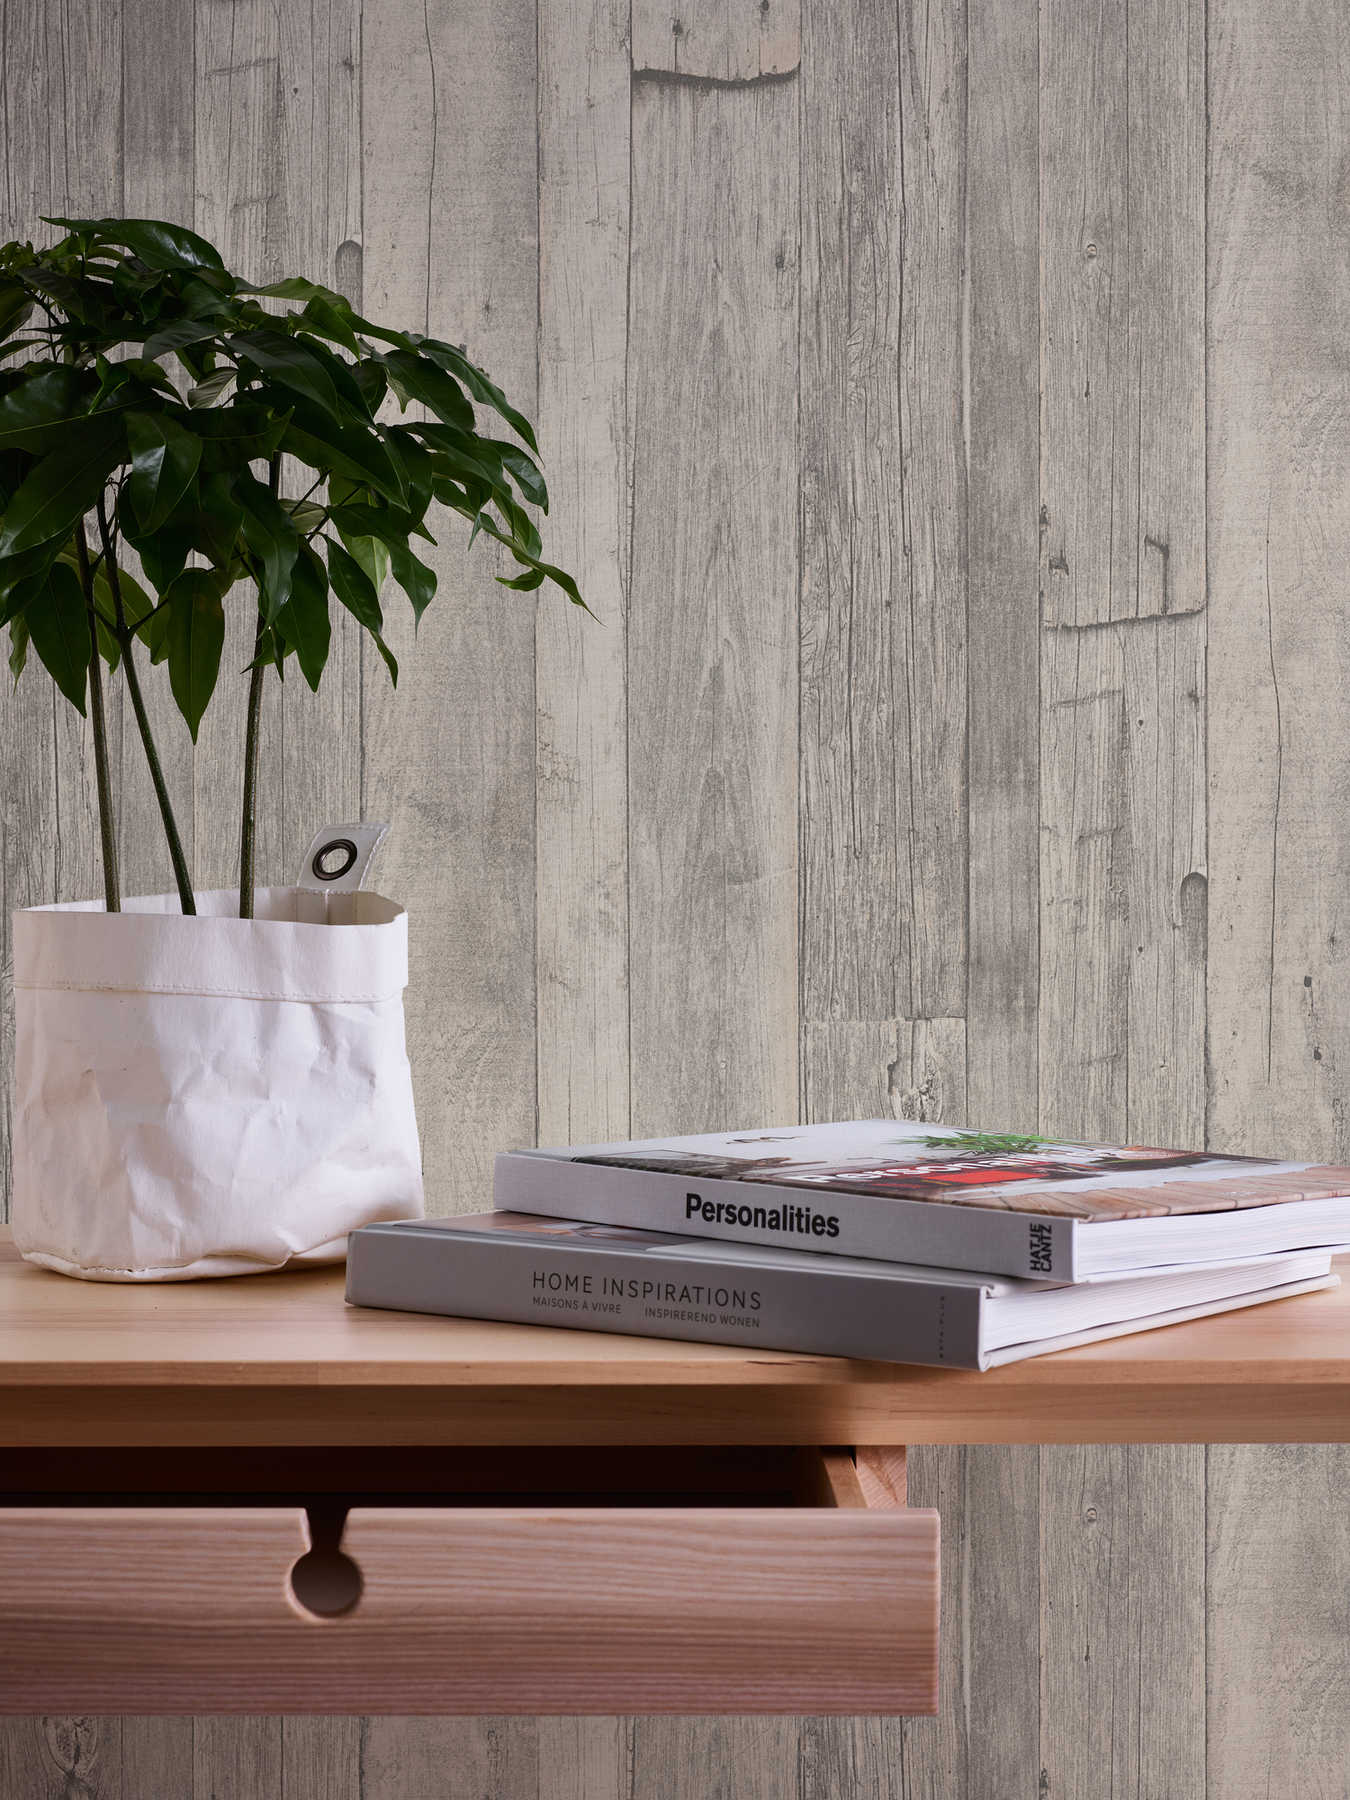             Holz-Tapete mit Brettern & Maserung im Vintage Design – Grau, Beige, Creme
        